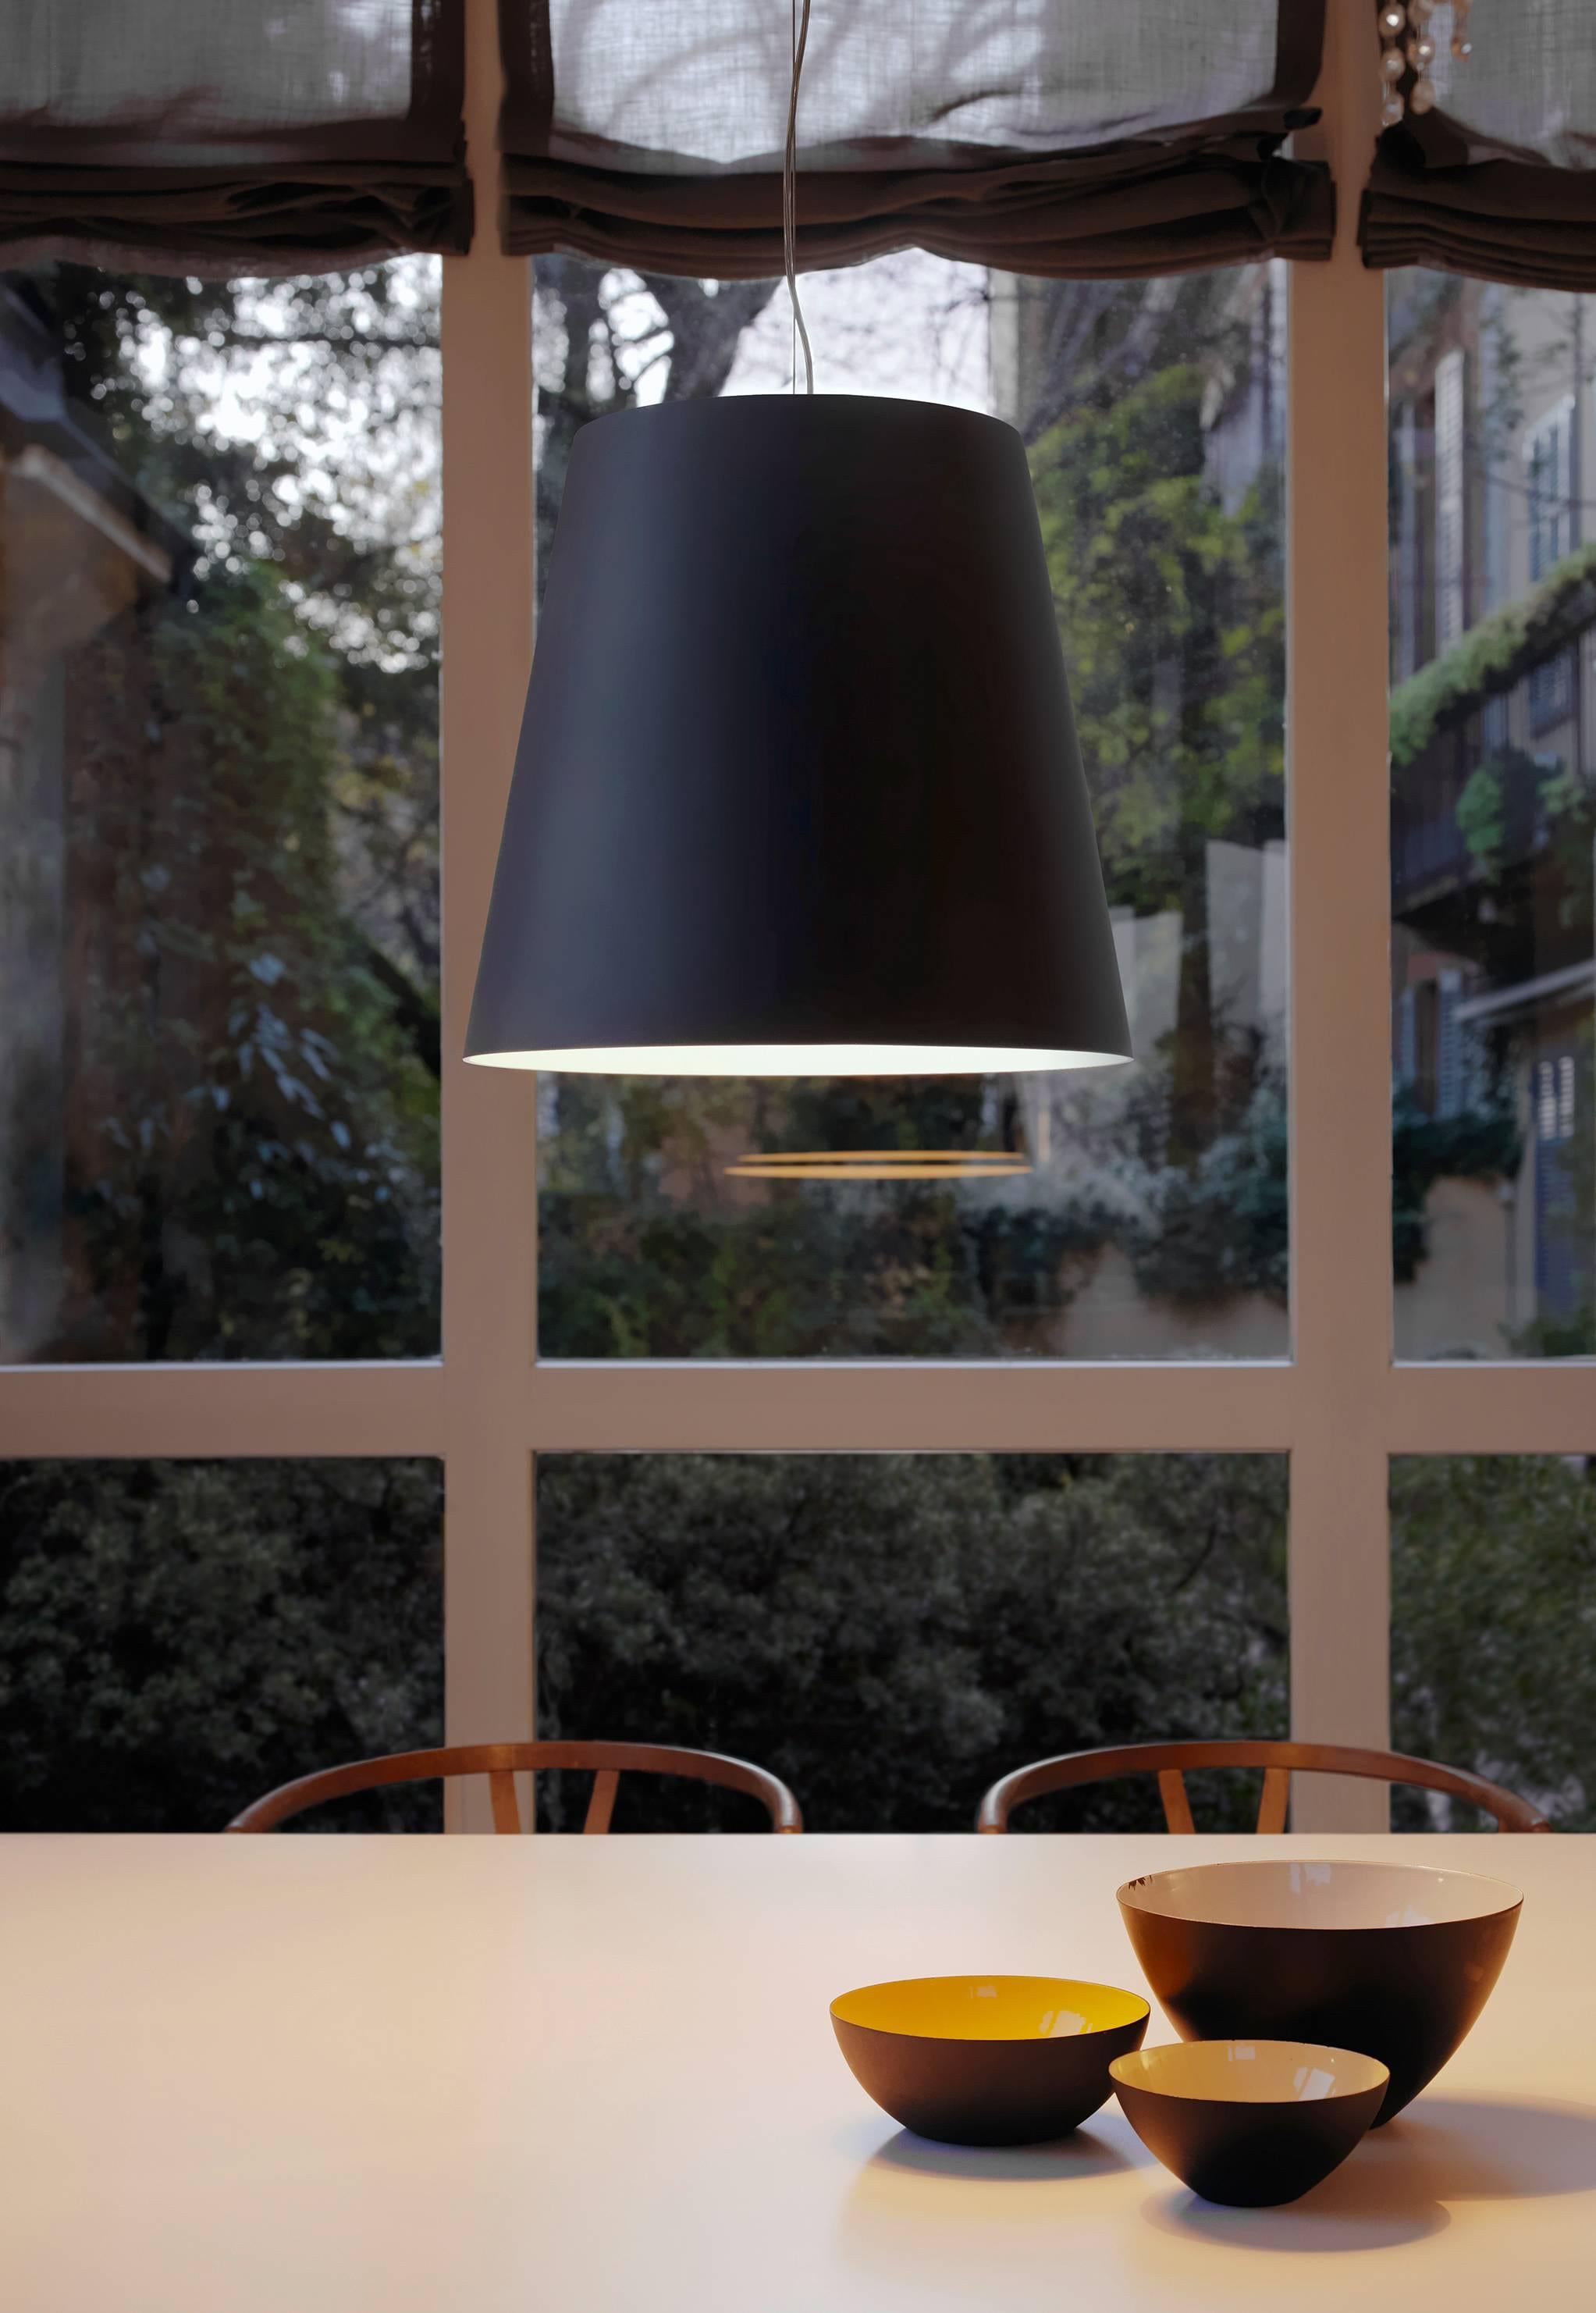 Conçue en 2003 par Charles Williams pour Fontana Arte, la lampe à suspension Amax est une interprétation extra-large de l'abat-jour classique de FontanaArte. Amax est une famille de lampes à suspension et de lampadaires, disponibles en version